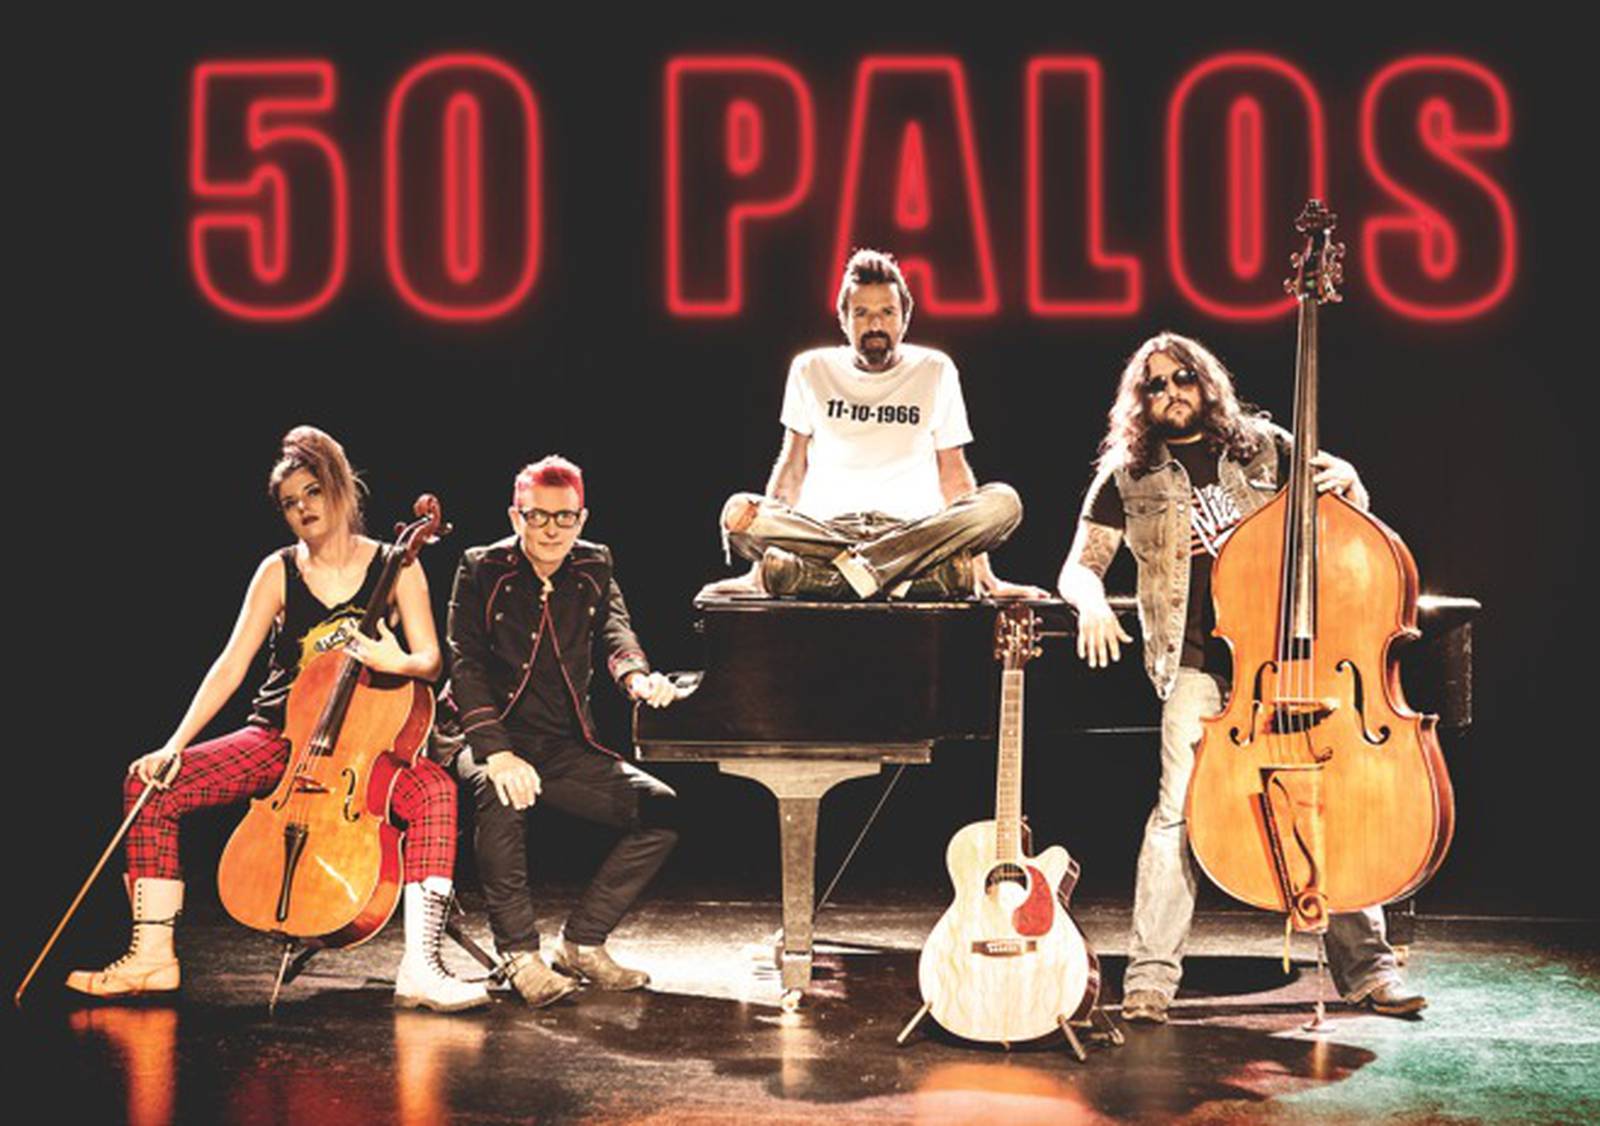 Regresa Jarabe de Palo en concierto acústico Metro Puerto Rico